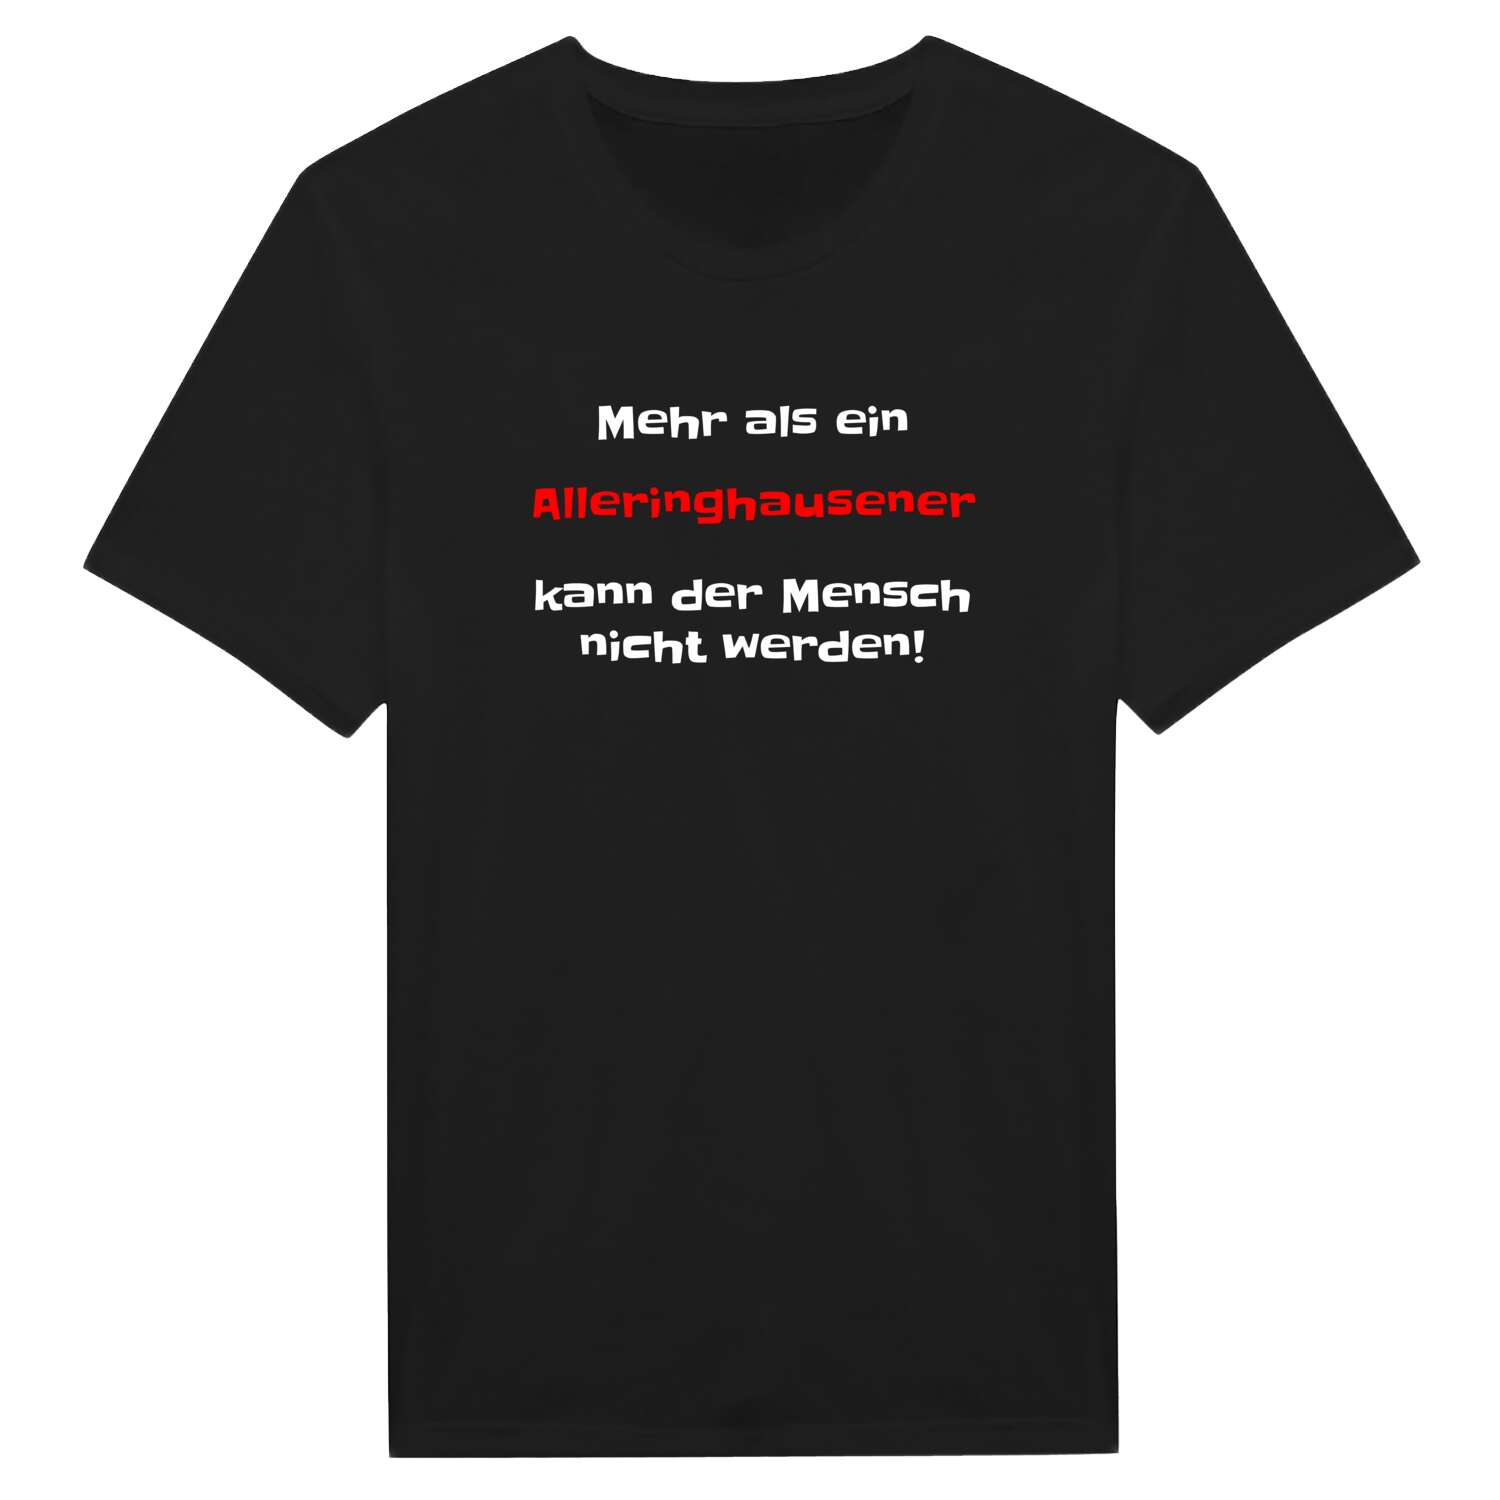 Alleringhausen T-Shirt »Mehr als ein«